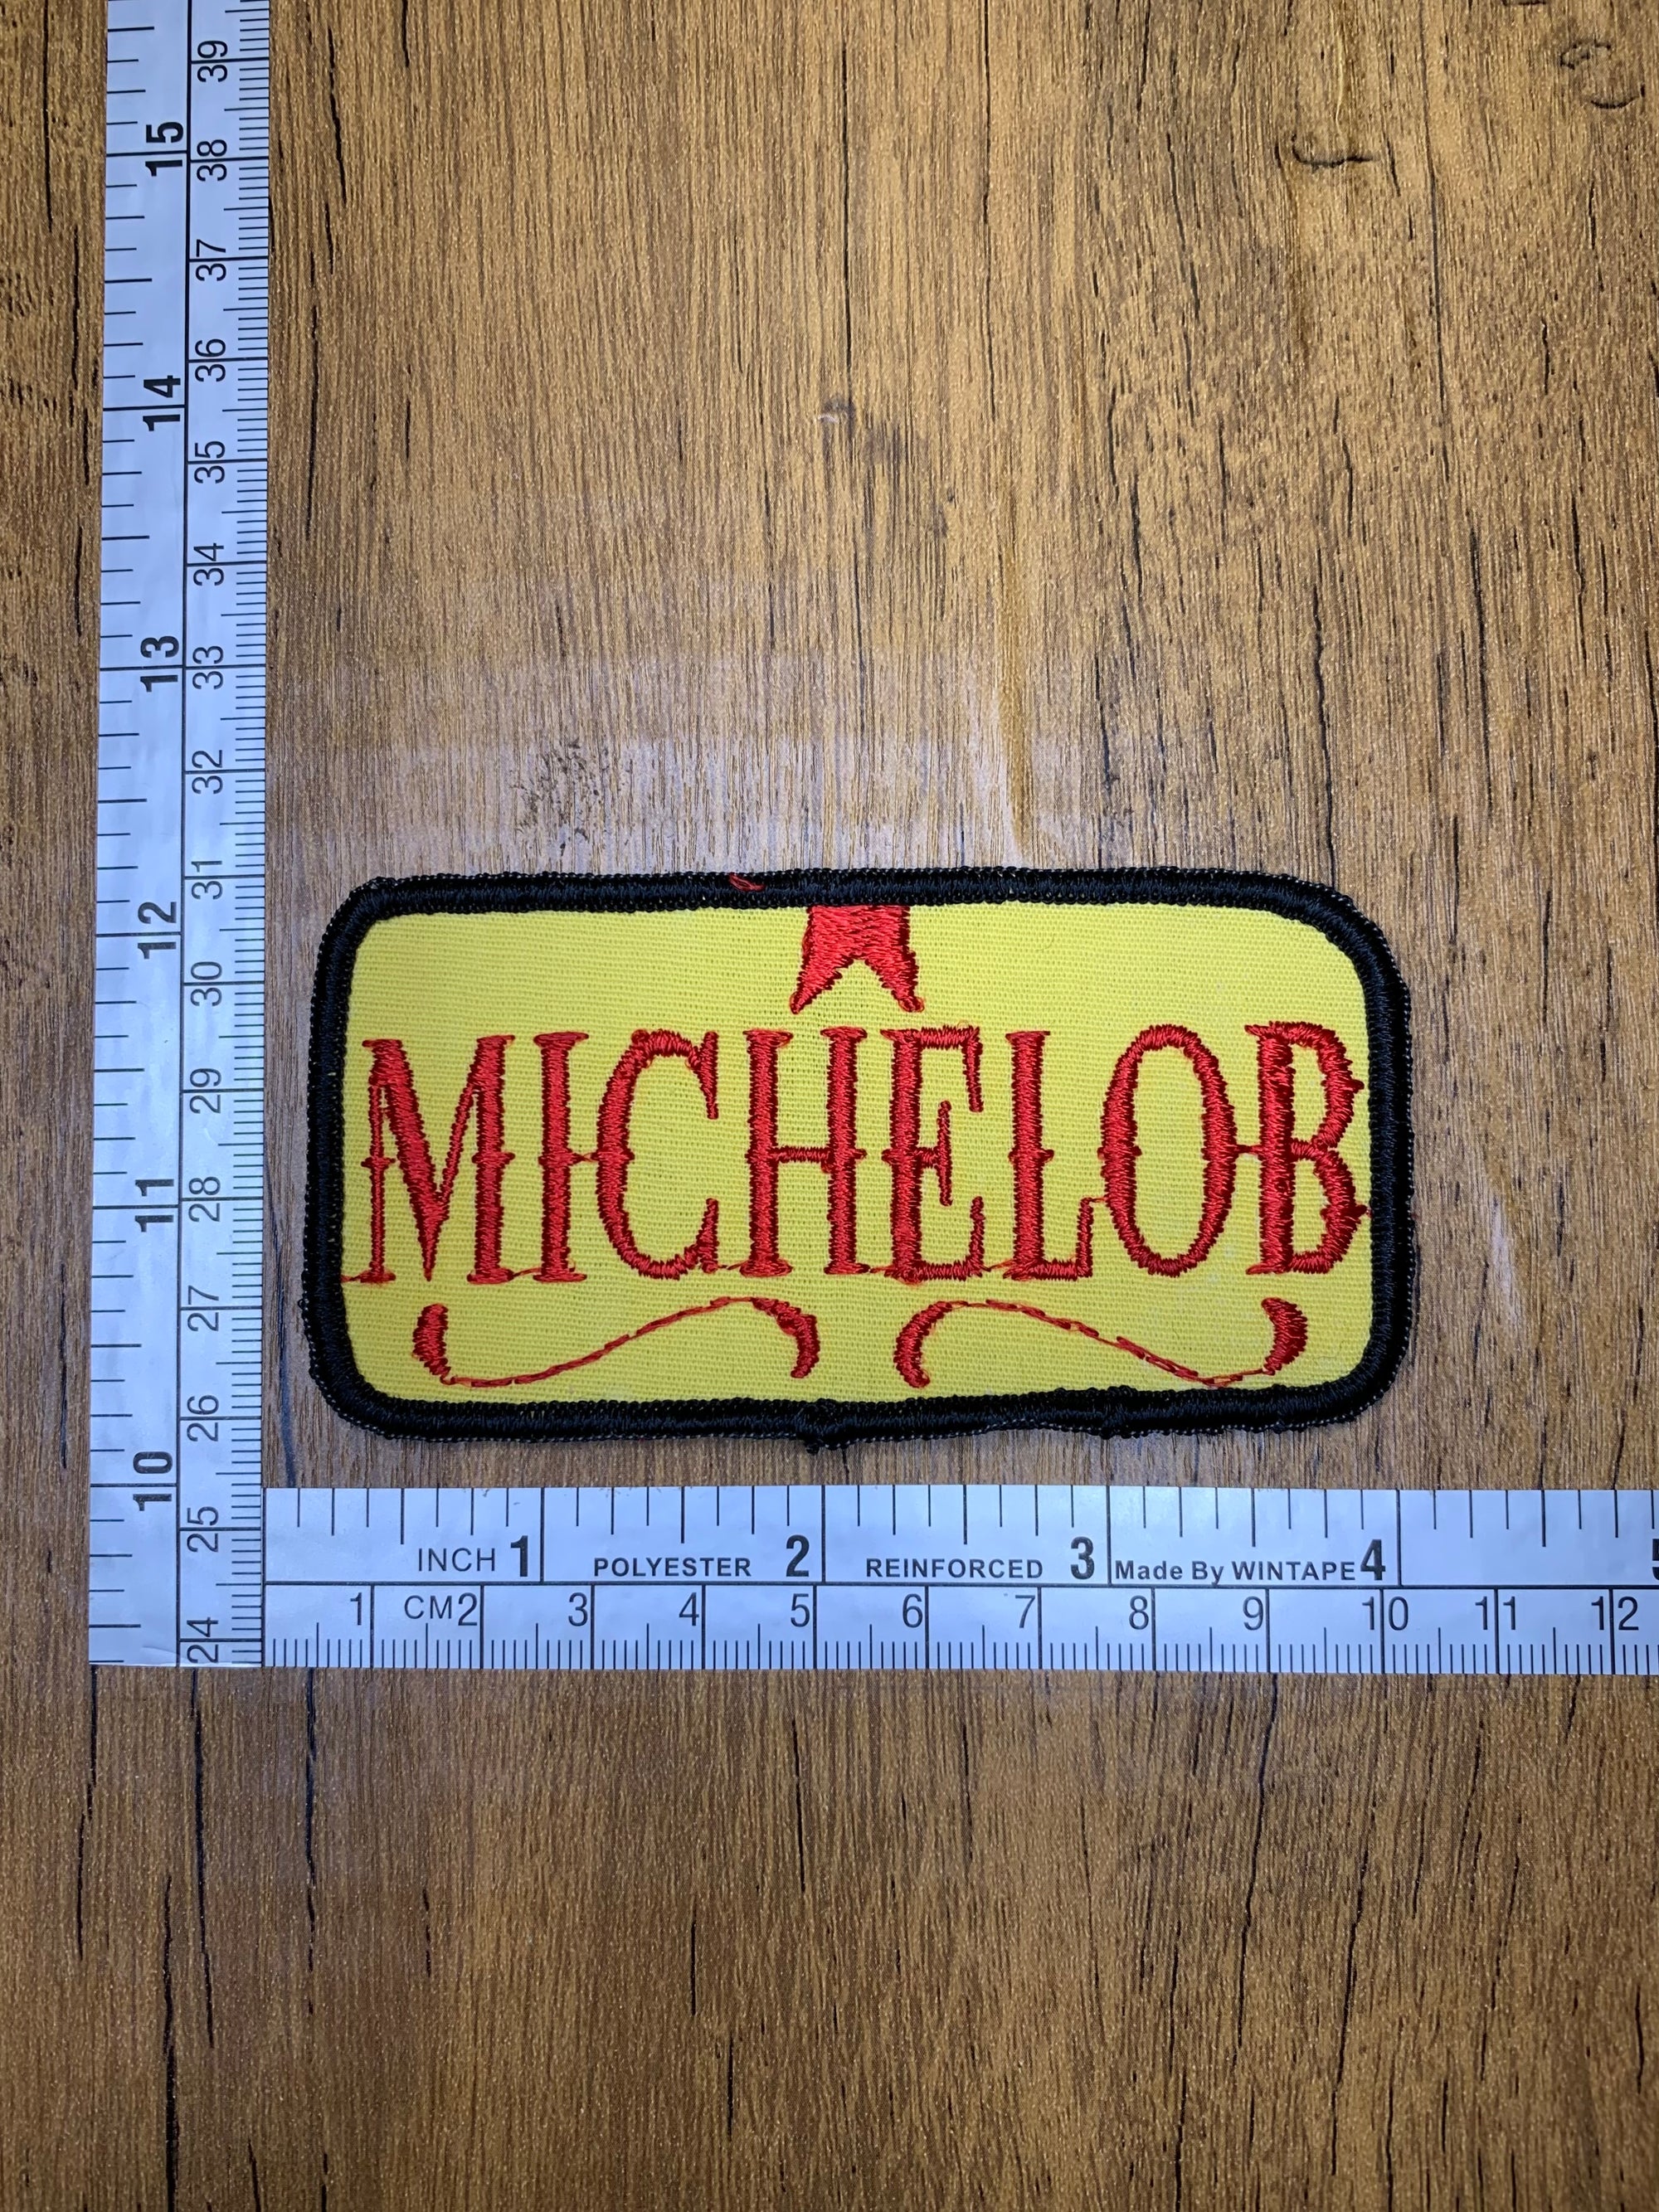 Vintage Michelob